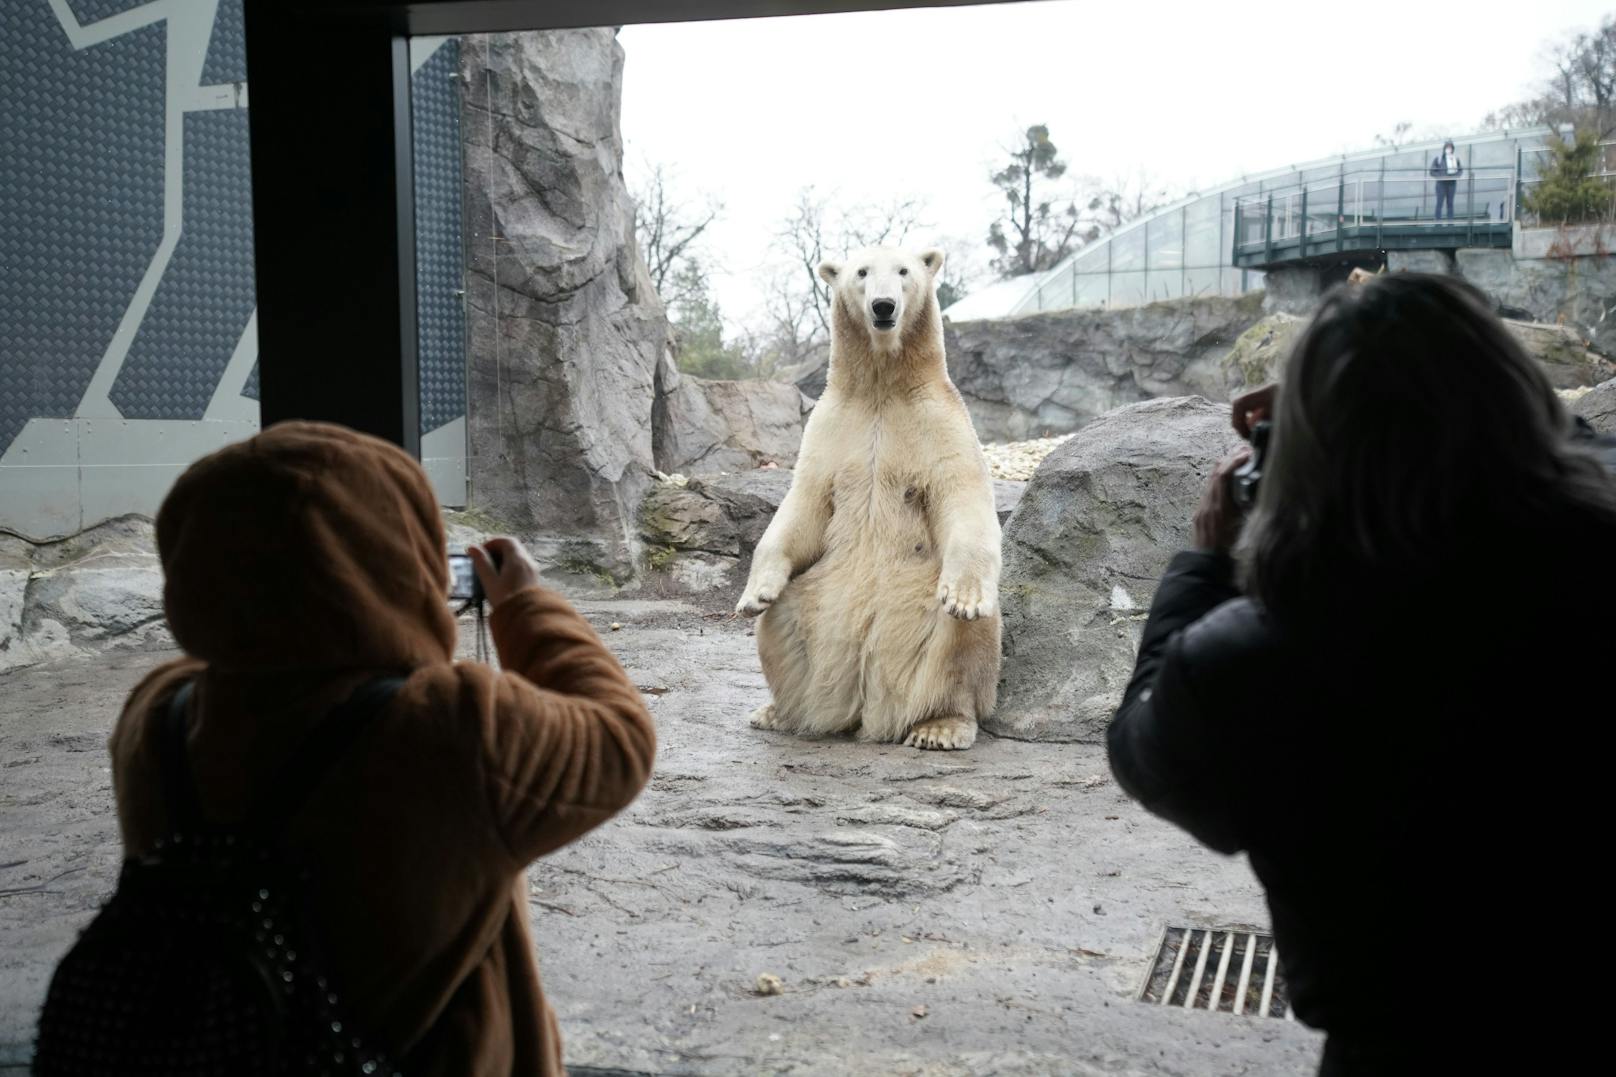 So begrüßen die Tiere aus dem Zoo Schönbrunn in Wien die Besucher nach dem Lockdown.